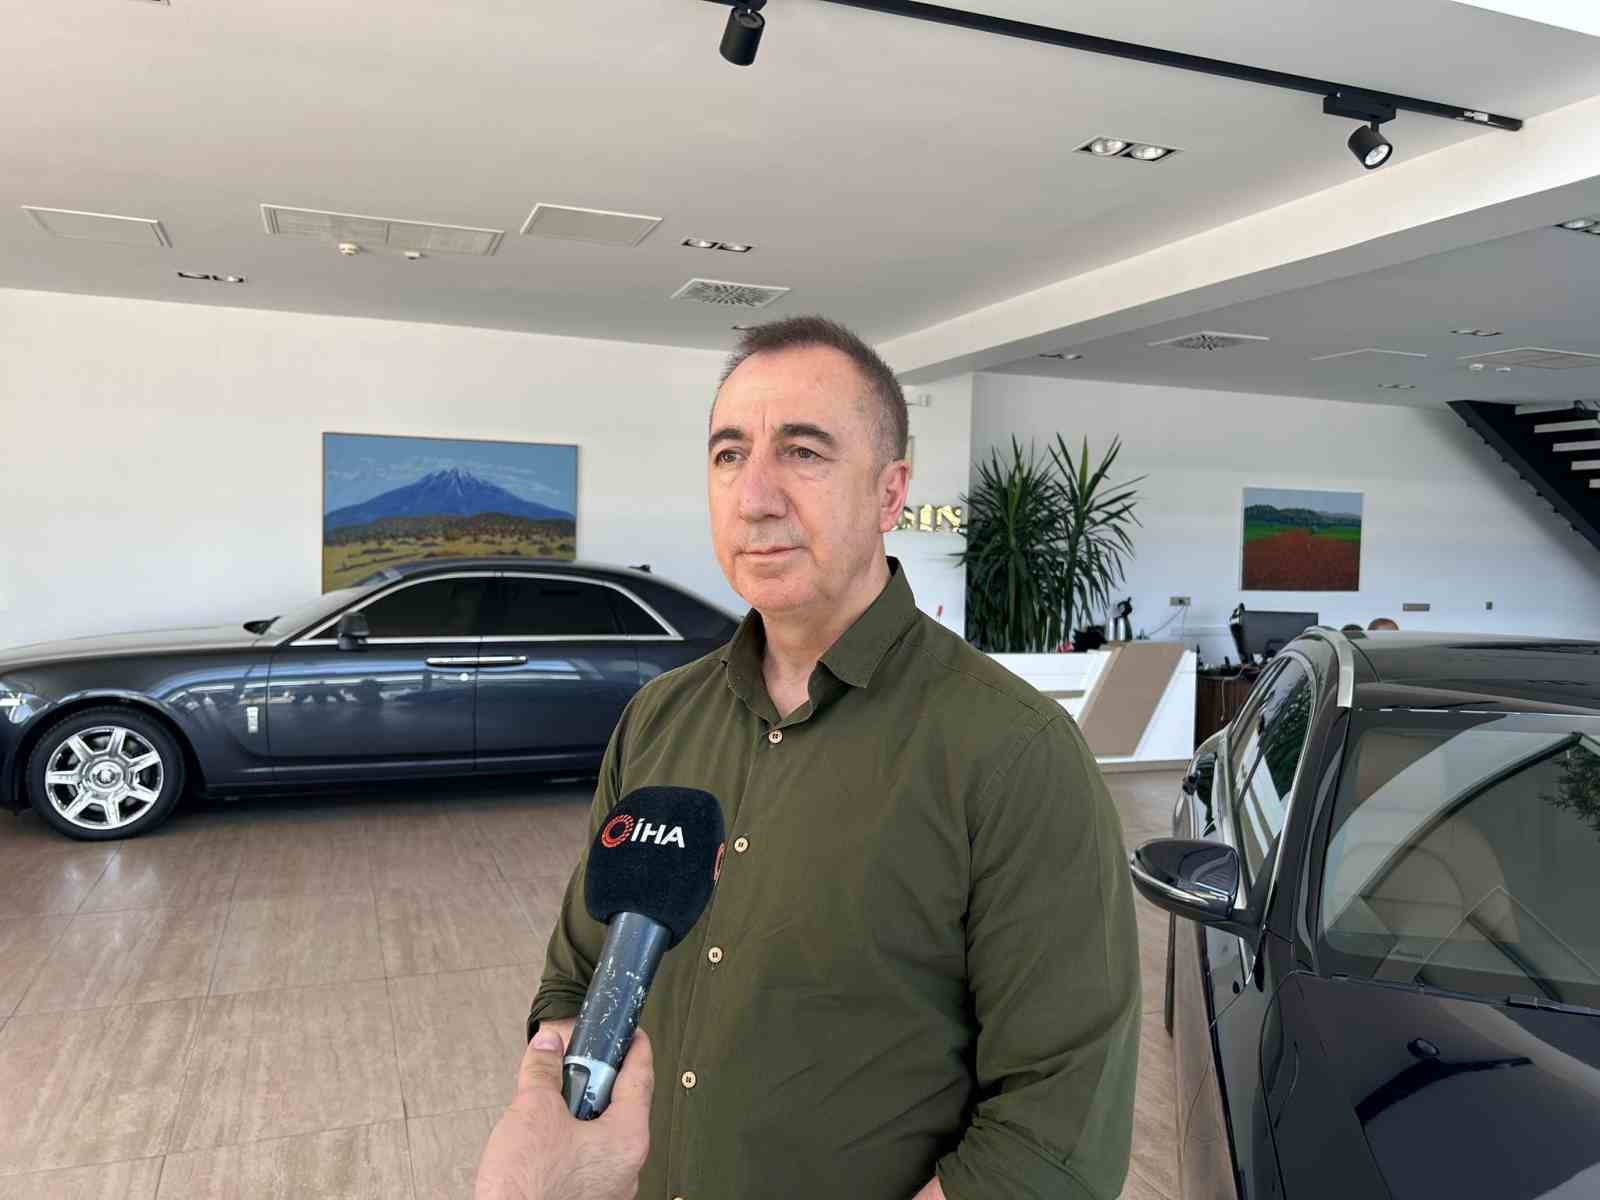 Otonomi Yönetim Kurulu Başkanı Erkoç: “Otomobil yatırım aracı olmaktan çıktı”